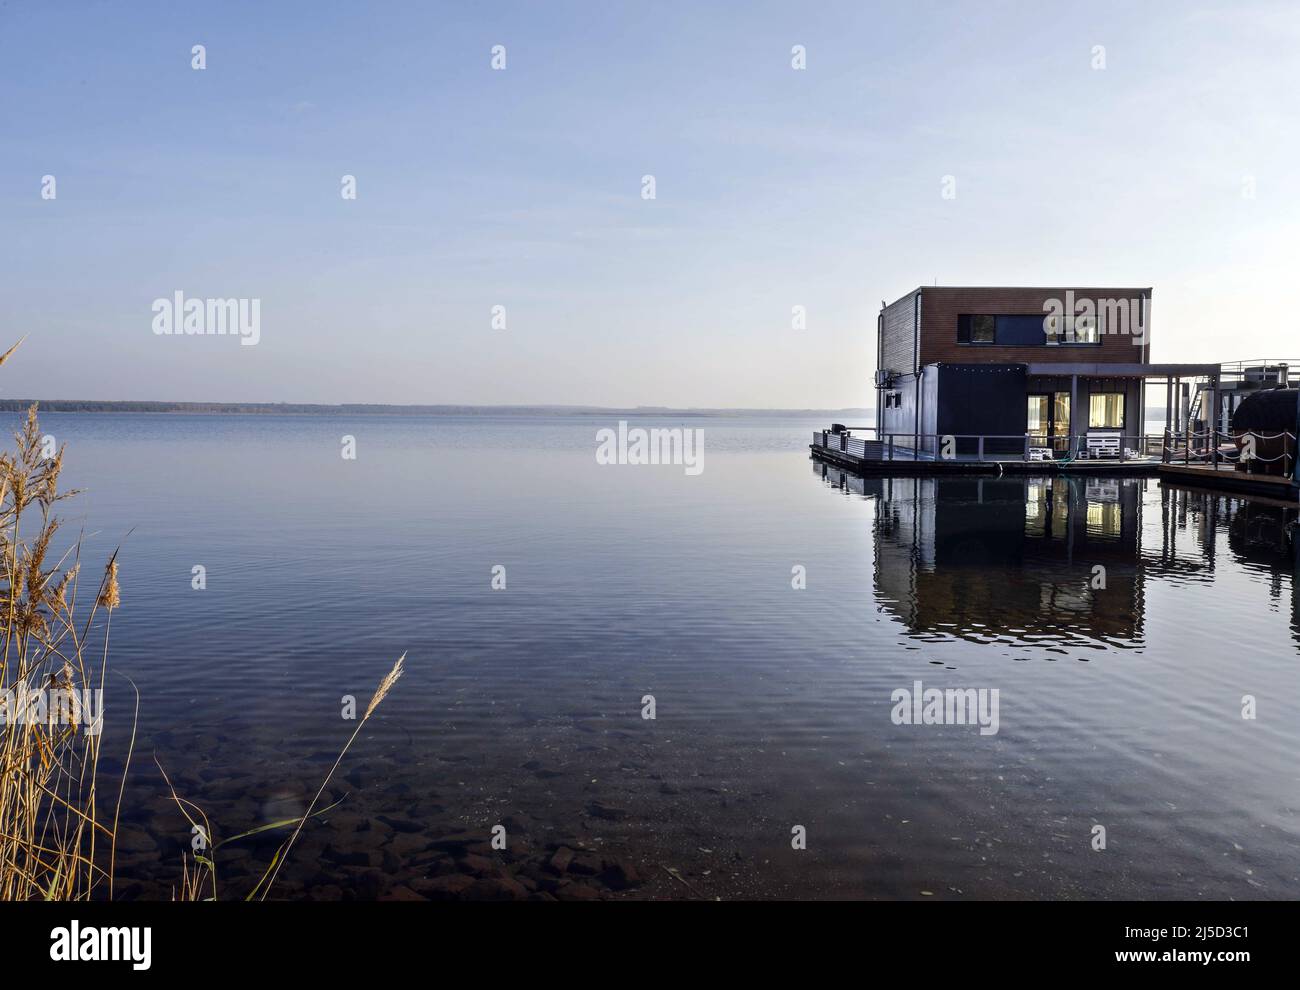 Greifenhain, 11.11.2021 - Maison flottante sur le lac Graebendorfer, l'ancienne mine de lignite opencast Greifenhain. [traduction automatique] Banque D'Images